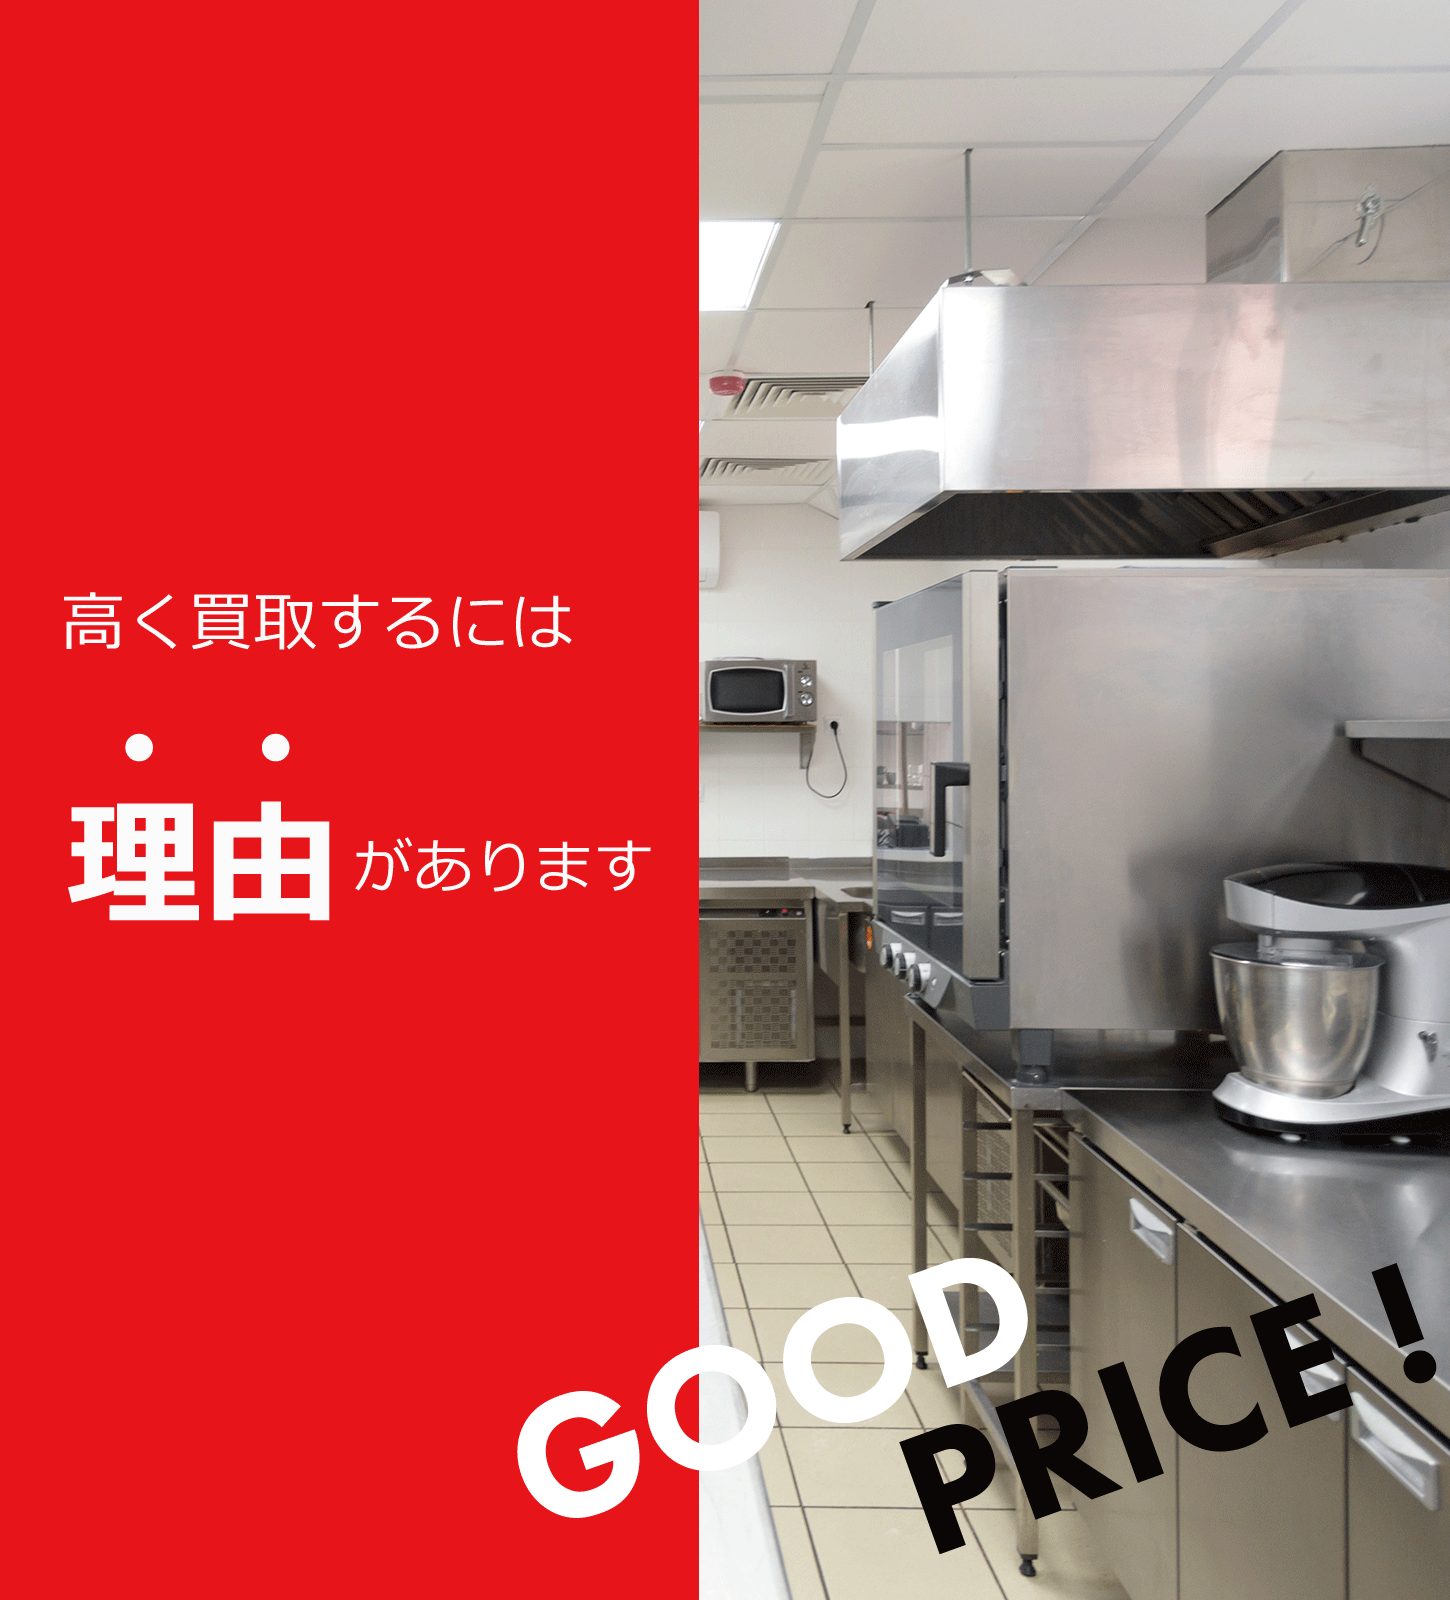 厨房機器や店舗用品を東京都で出張買取するリサイクルショップ